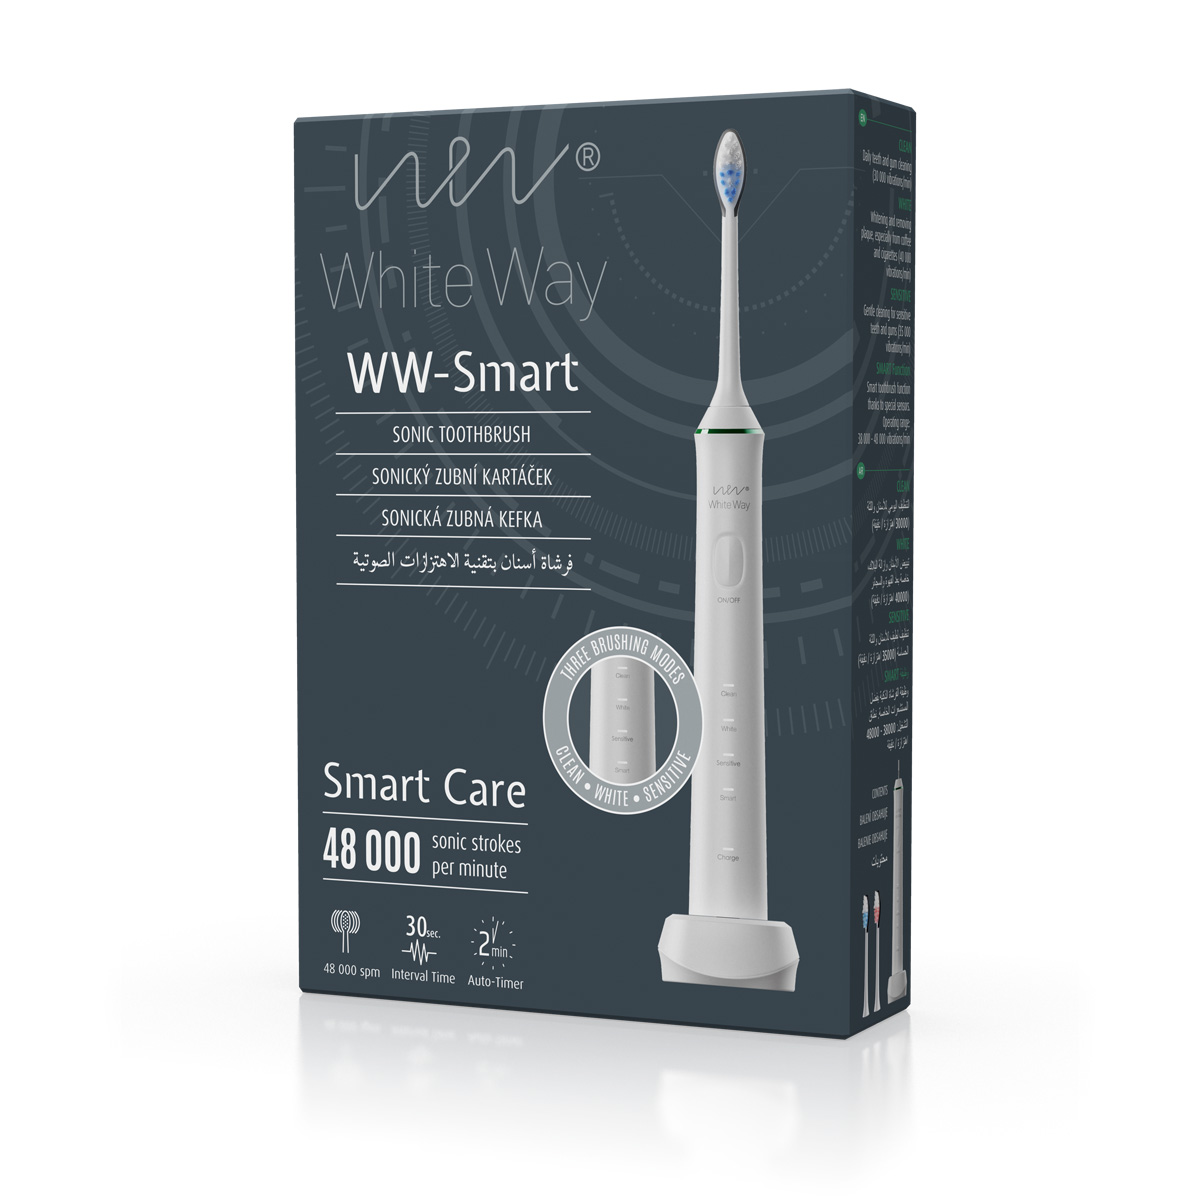 Biotter WW – Smart sonický zubní kartáček bílý